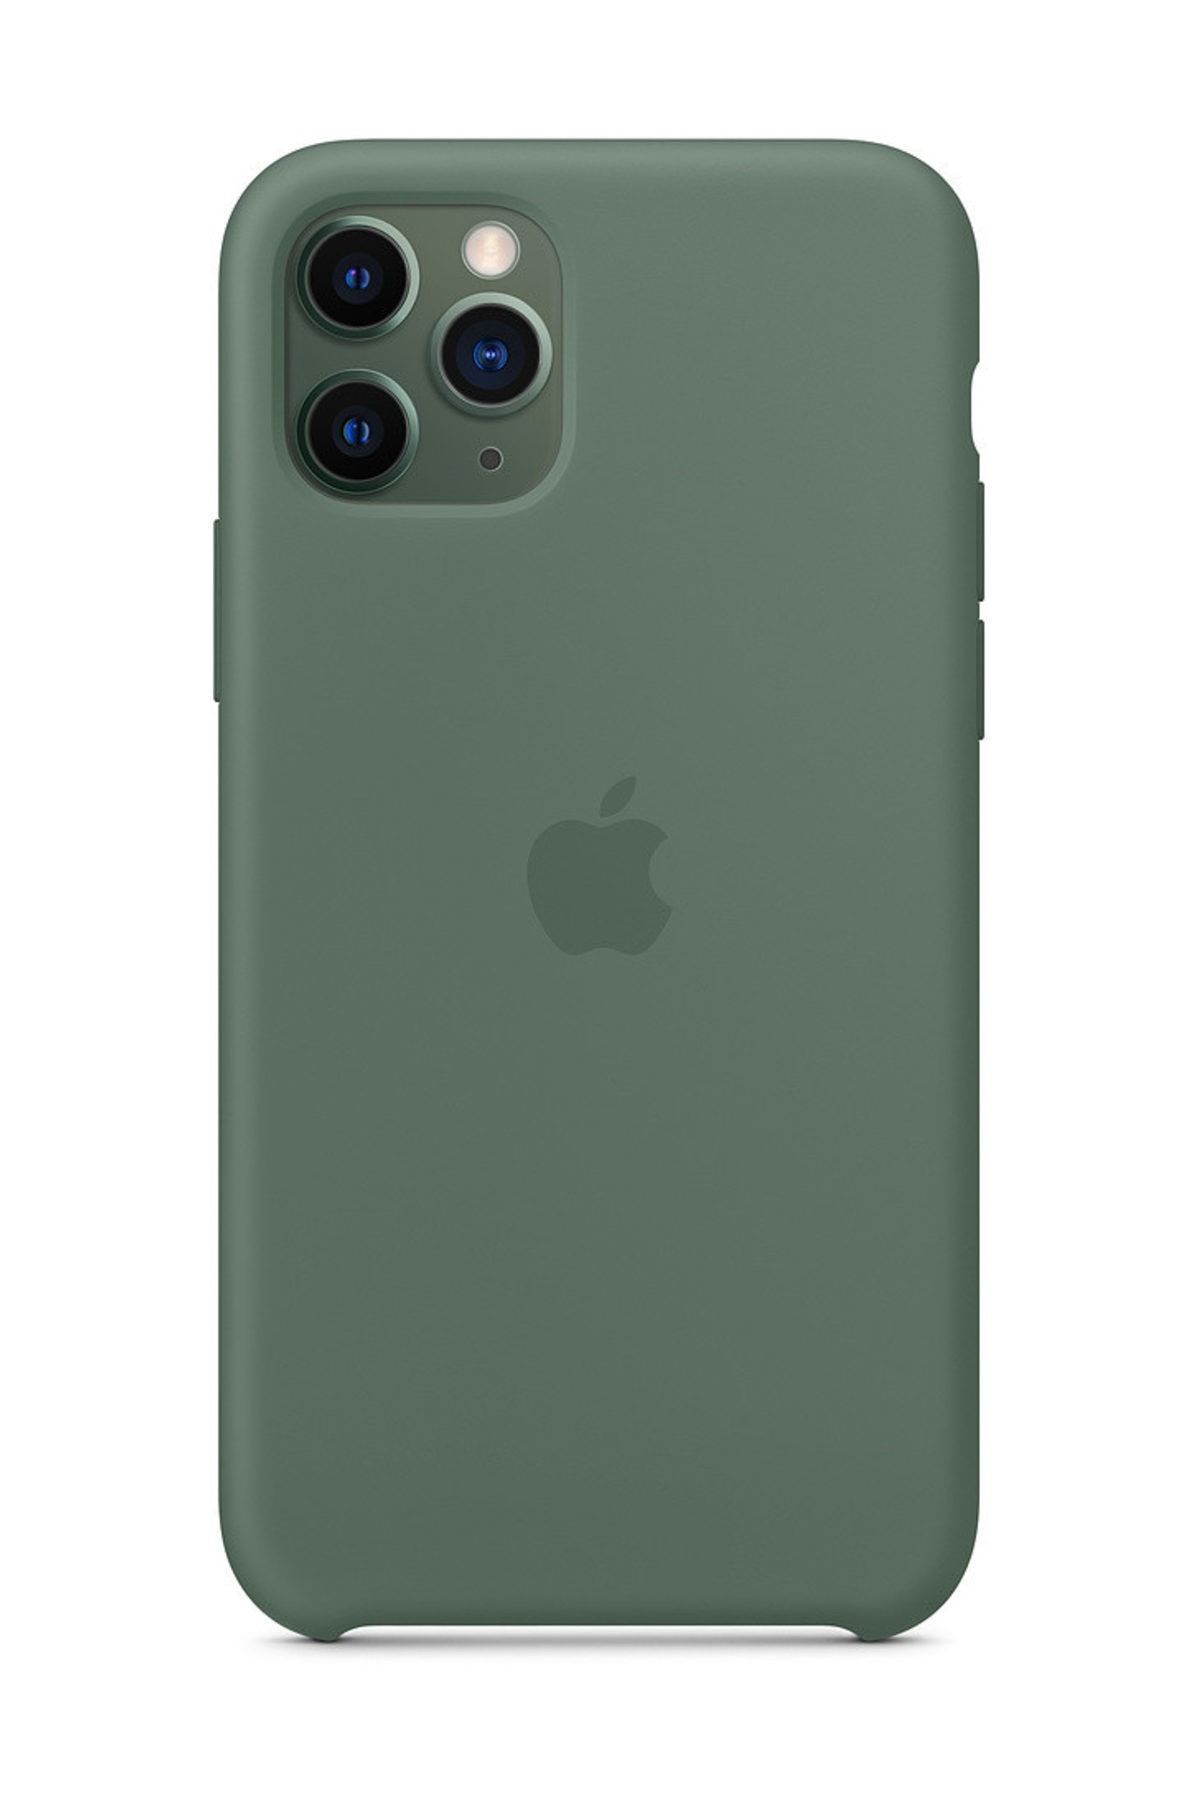 Telefon Aksesuarları iPhone 11 Pro Silikon Kılıf-MWVU2ZM/A - İthalatçı Garantili - Çam Yeşili